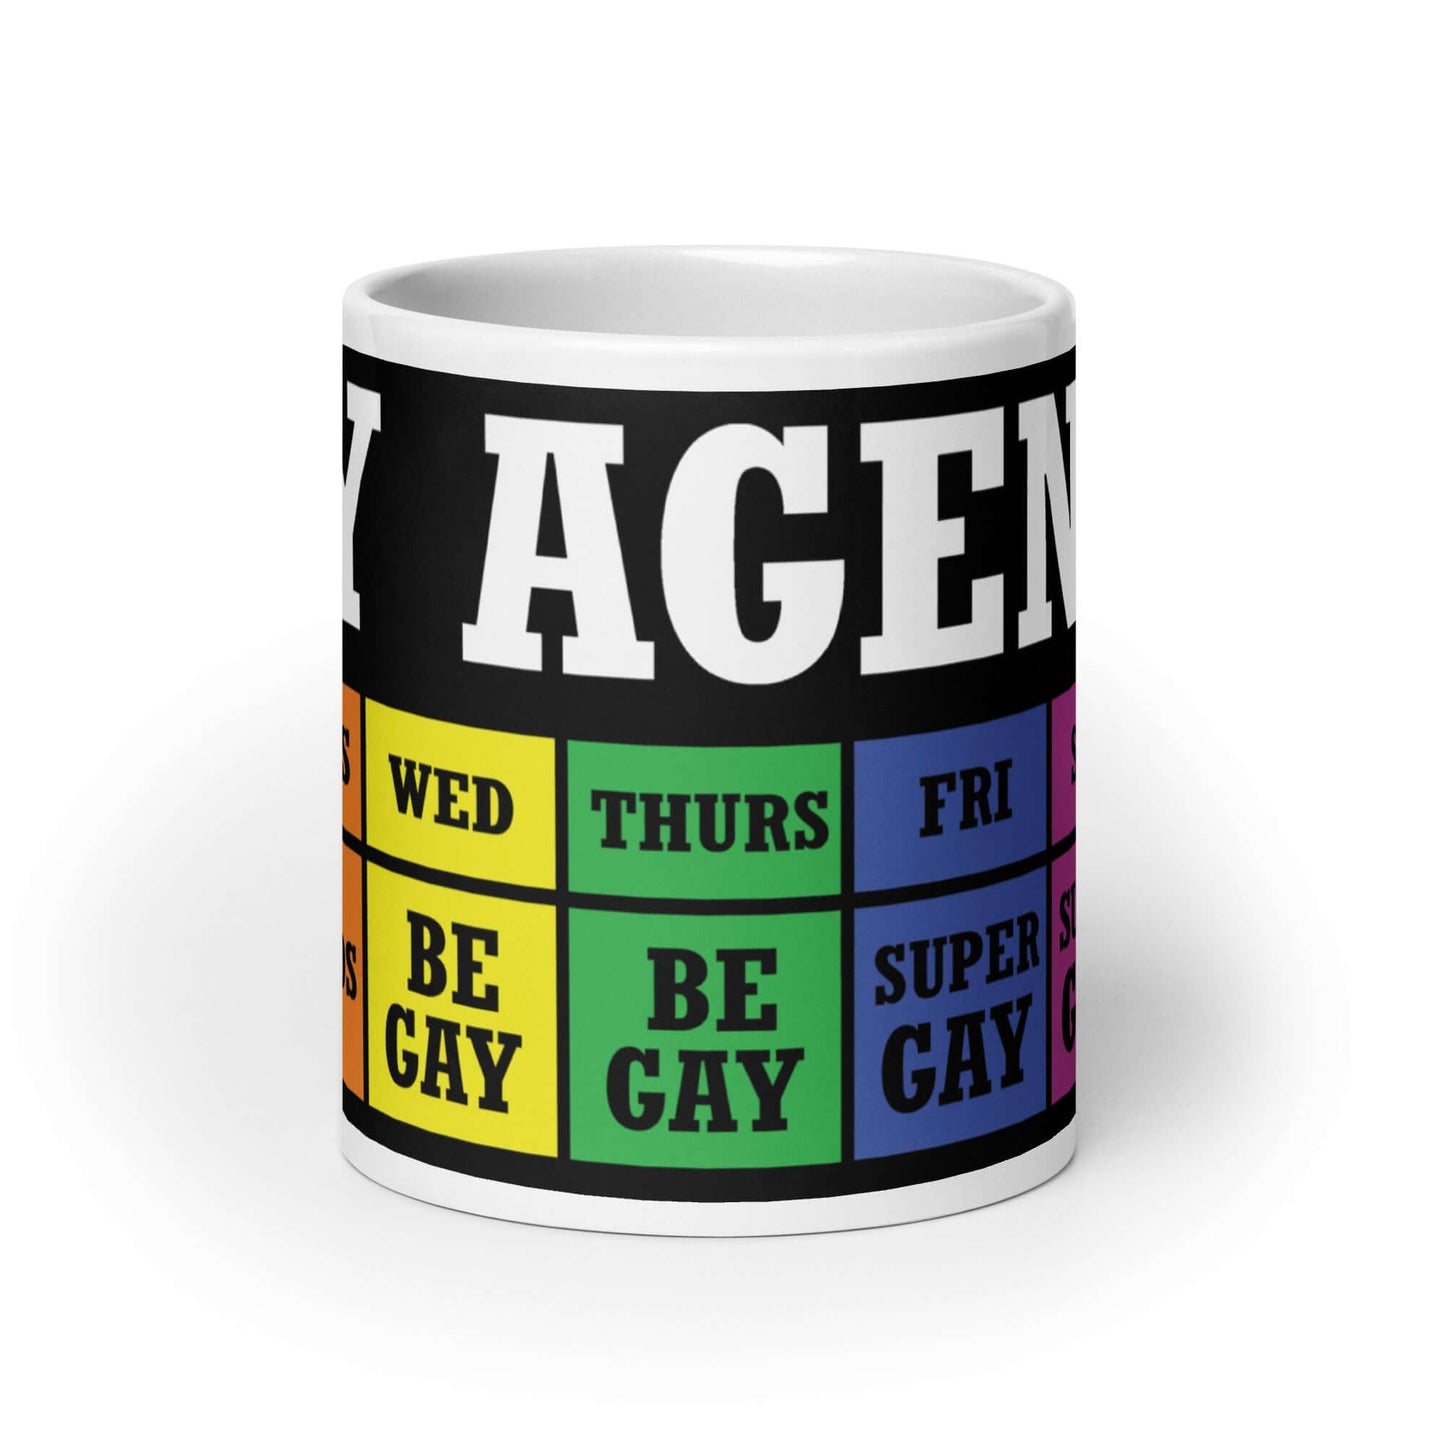 Gay agenda mug